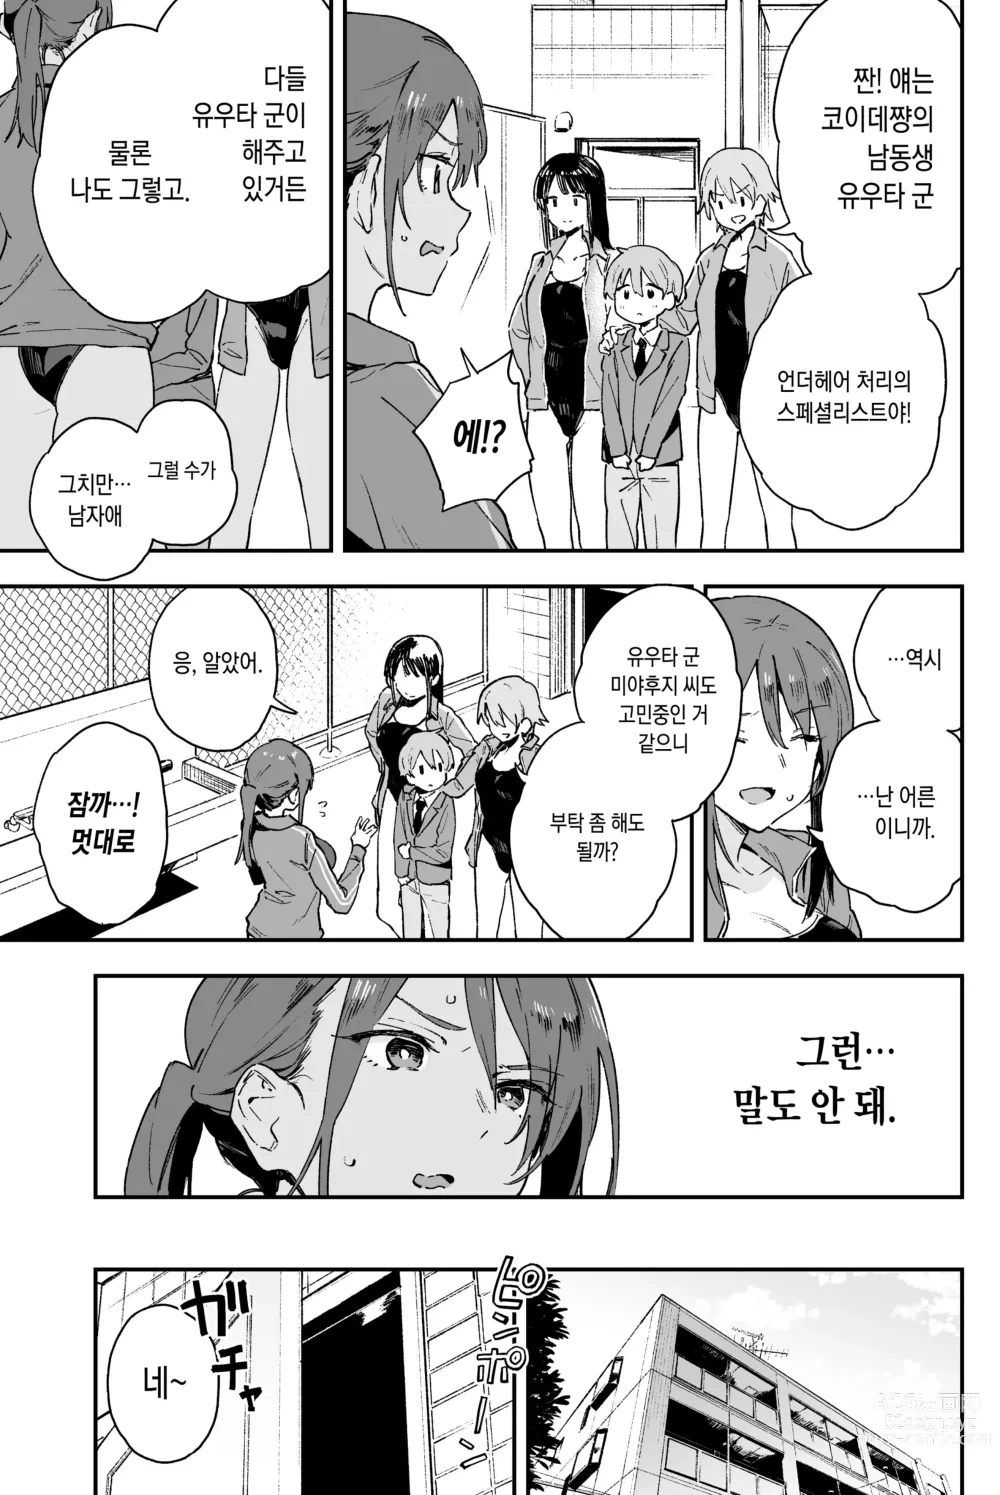 Page 5 of doujinshi 쿨한 누나에겐 누구에게도 말할 수 없는 고민이 있다.